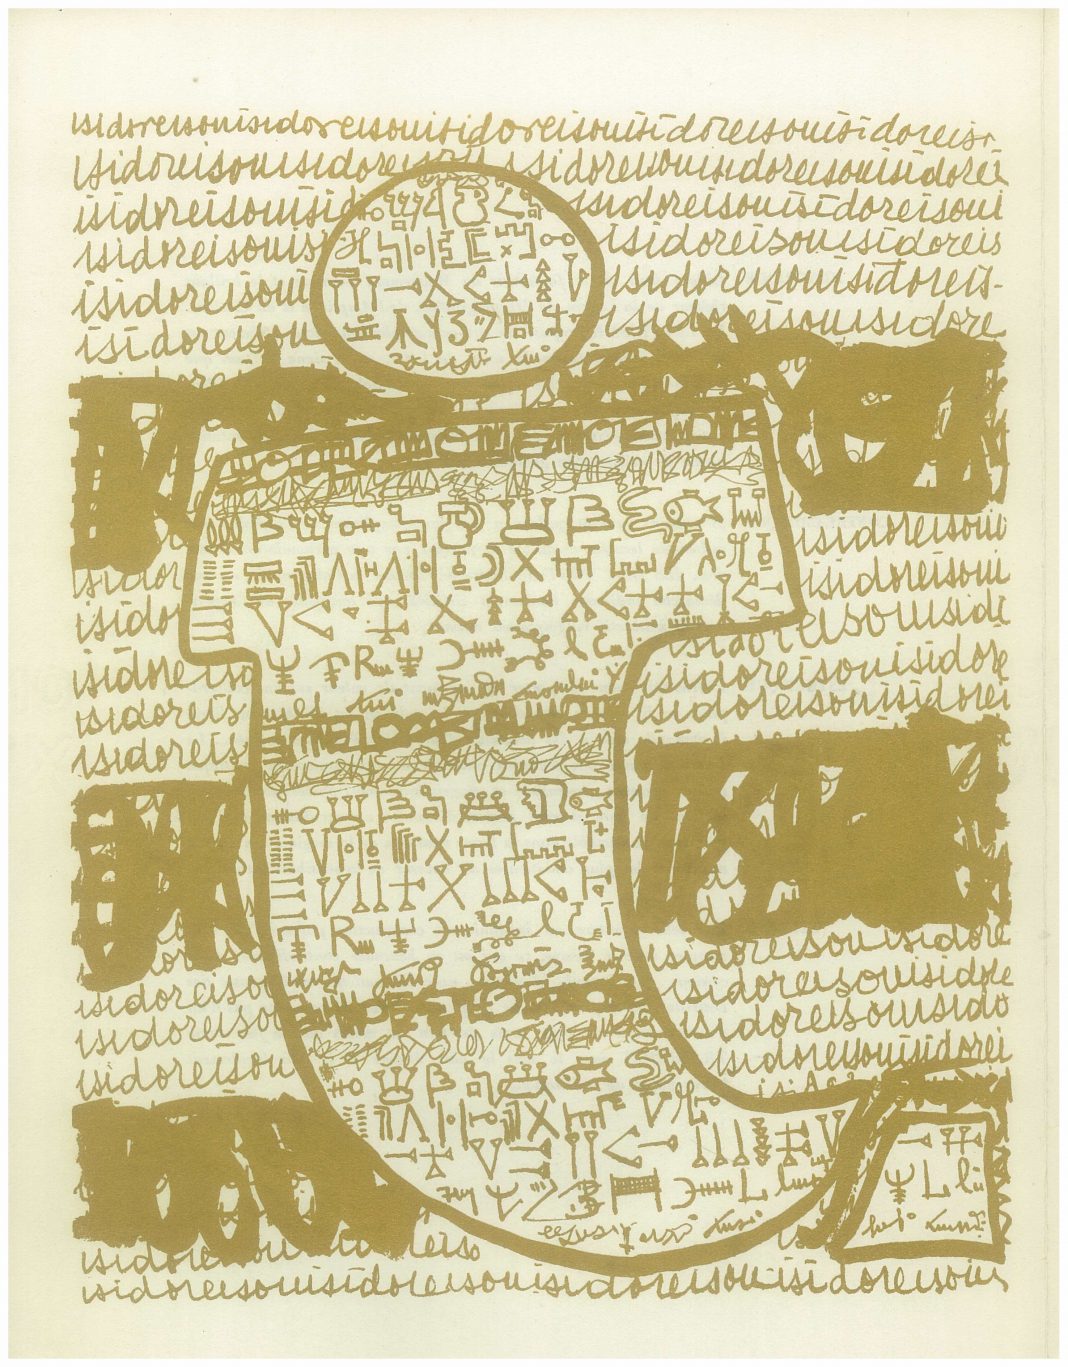 Douze hypergraphies. Polylogue. Una cartella di Isidore Isou per l’ICAR (1964)https://www.exibart.com/repository/media/eventi/2018/01/douze-hypergraphies.-polylogue.-una-cartella-di-isidore-isou-per-l8217icar-1964-1068x1367.jpg